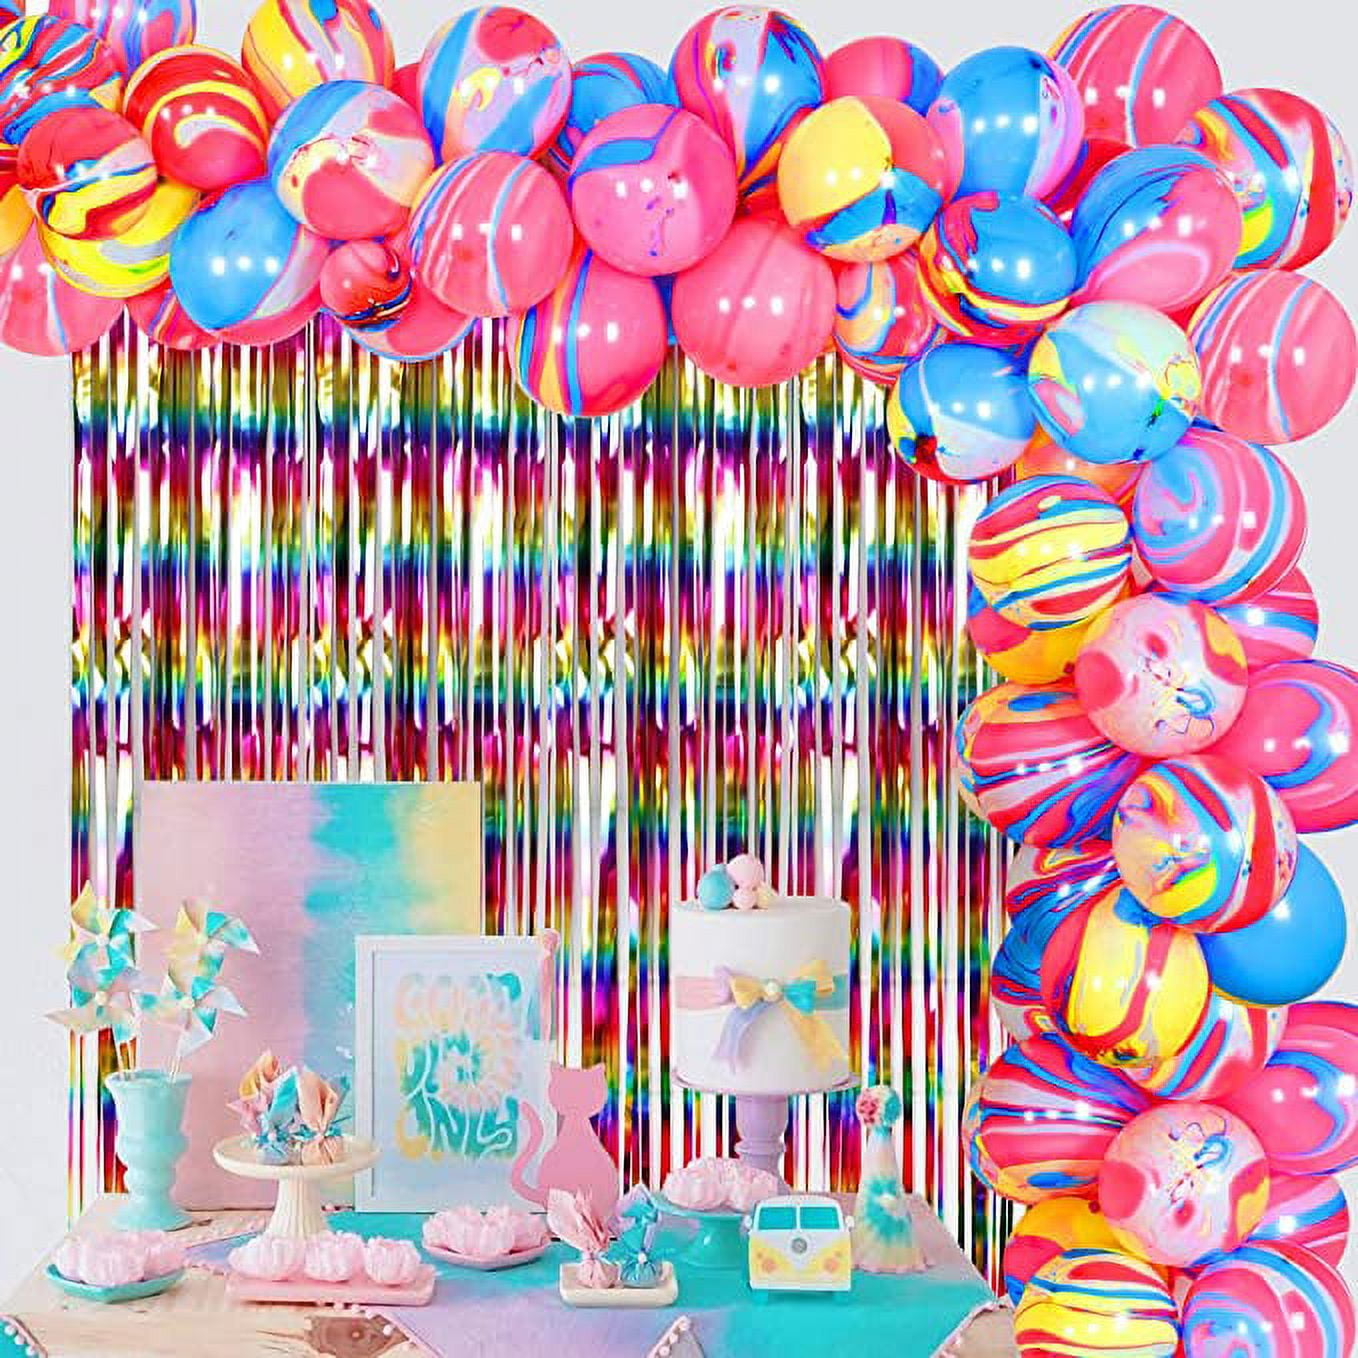 Tie Dye Spiral Themed Kindergarten Birthday Party Decoration Set